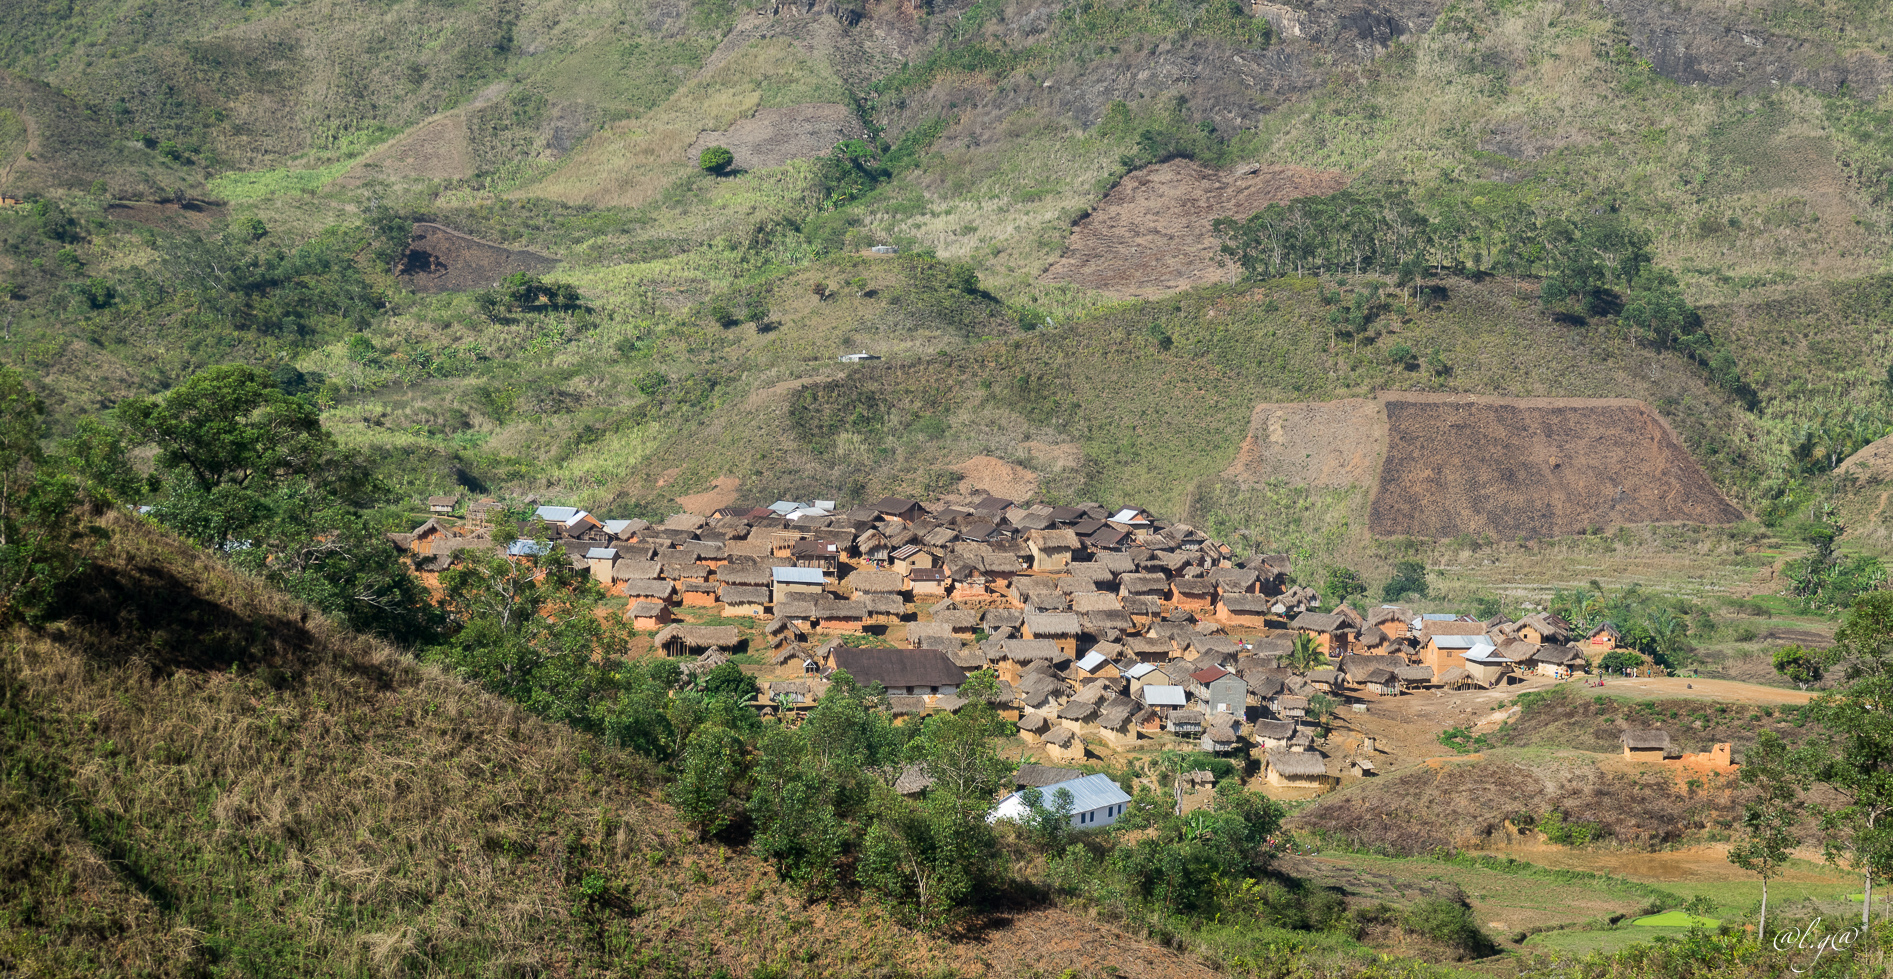 Départ du village d'Ampasinambo